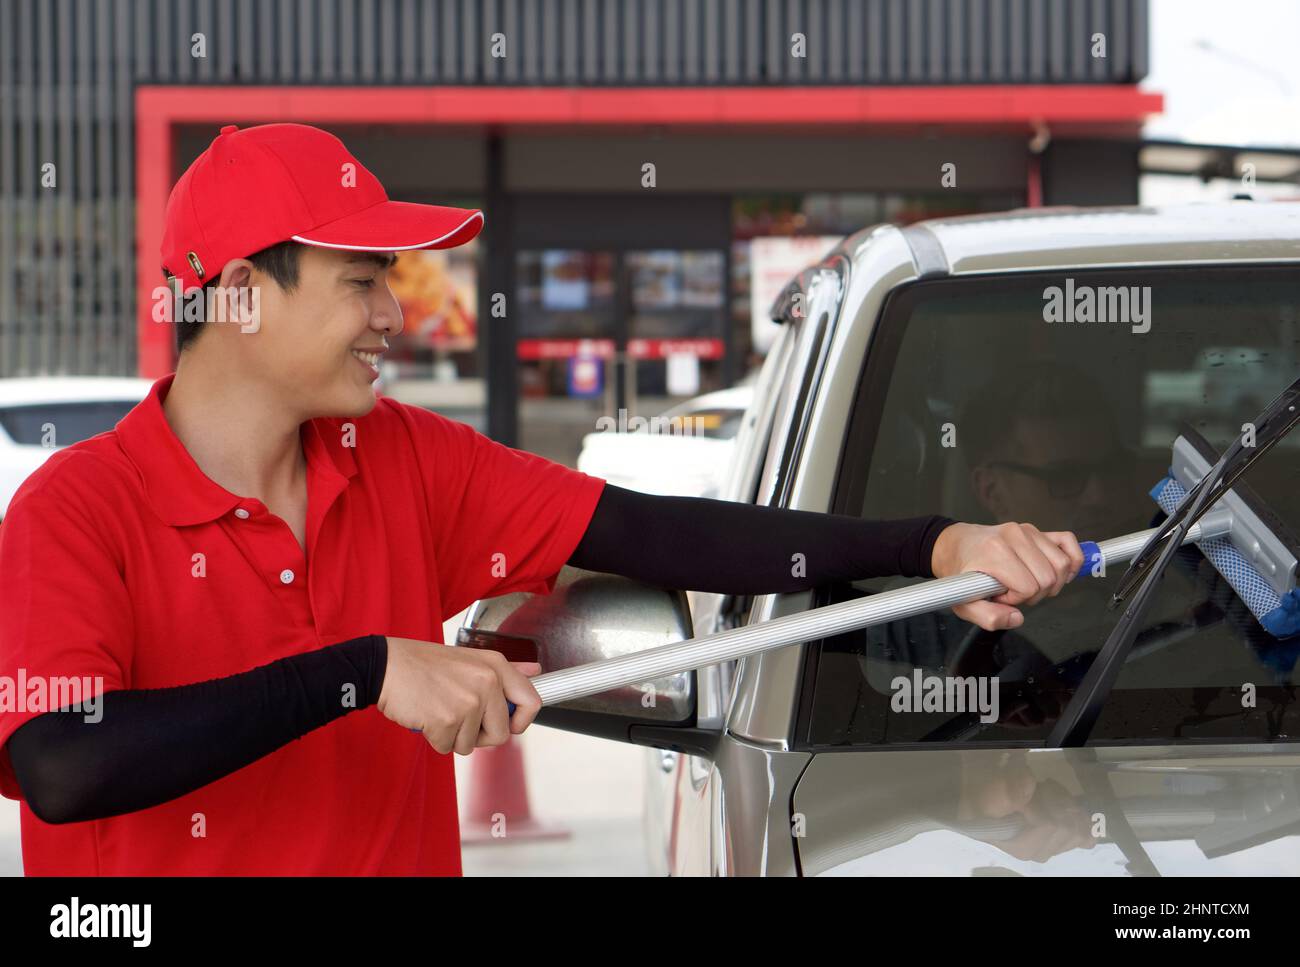 Ouvrier de station-service asiatique en uniforme rouge nettoyant le pare-brise de voiture avec raclette de fenêtre.Un conducteur caucasien avec des lunettes de soleil attendant à l'intérieur de la voiture. Banque D'Images